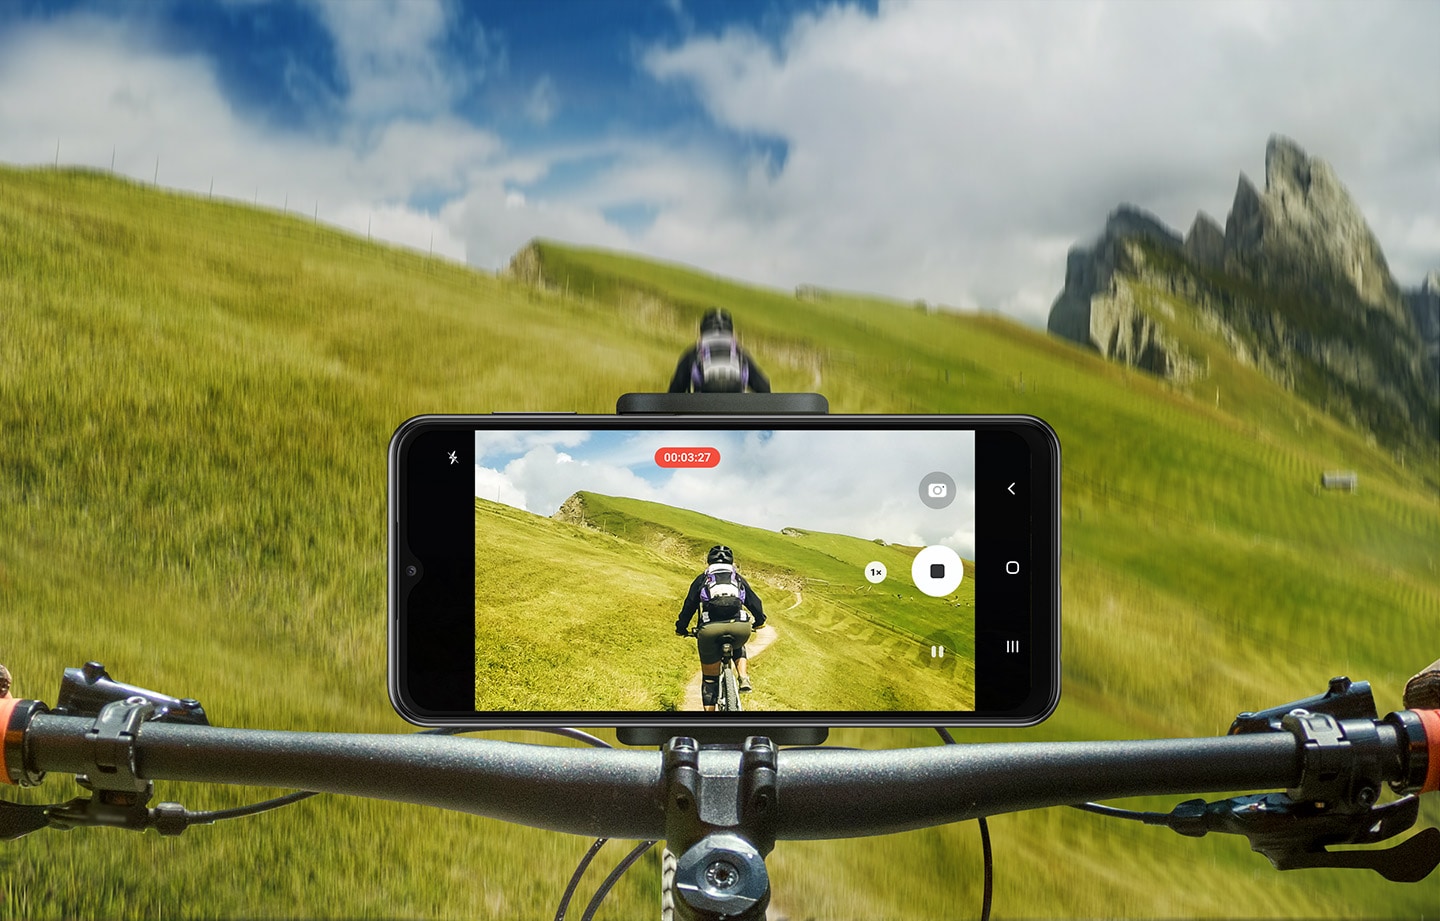 Ein Galaxy A23 5G ist am Lenker eines Mountainbikes befestigt, das im Gelände auf einer grasbewachsenen Piste gefahren wird. Die Kamera des Smartphones nimmt den Radfahrer vor ihm auf.